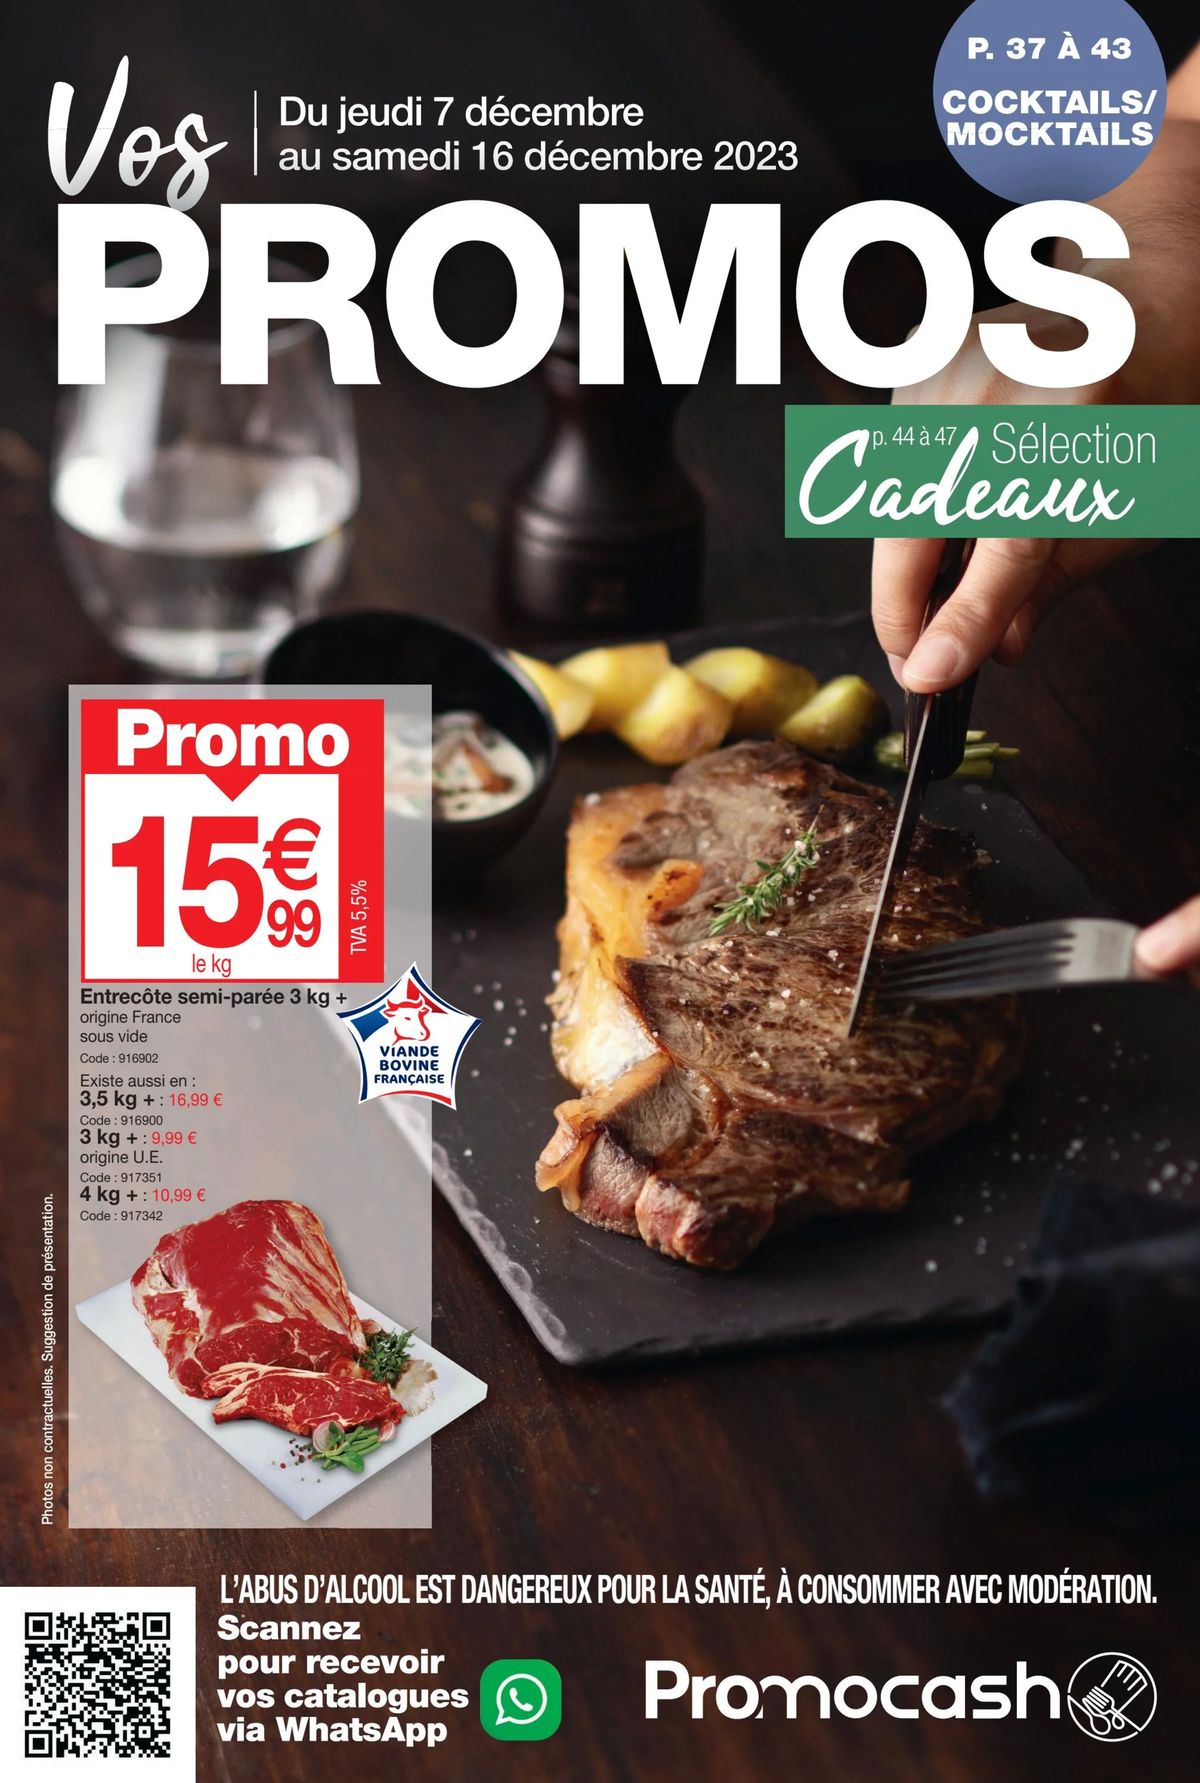 Catalogue Vos promos, page 00001